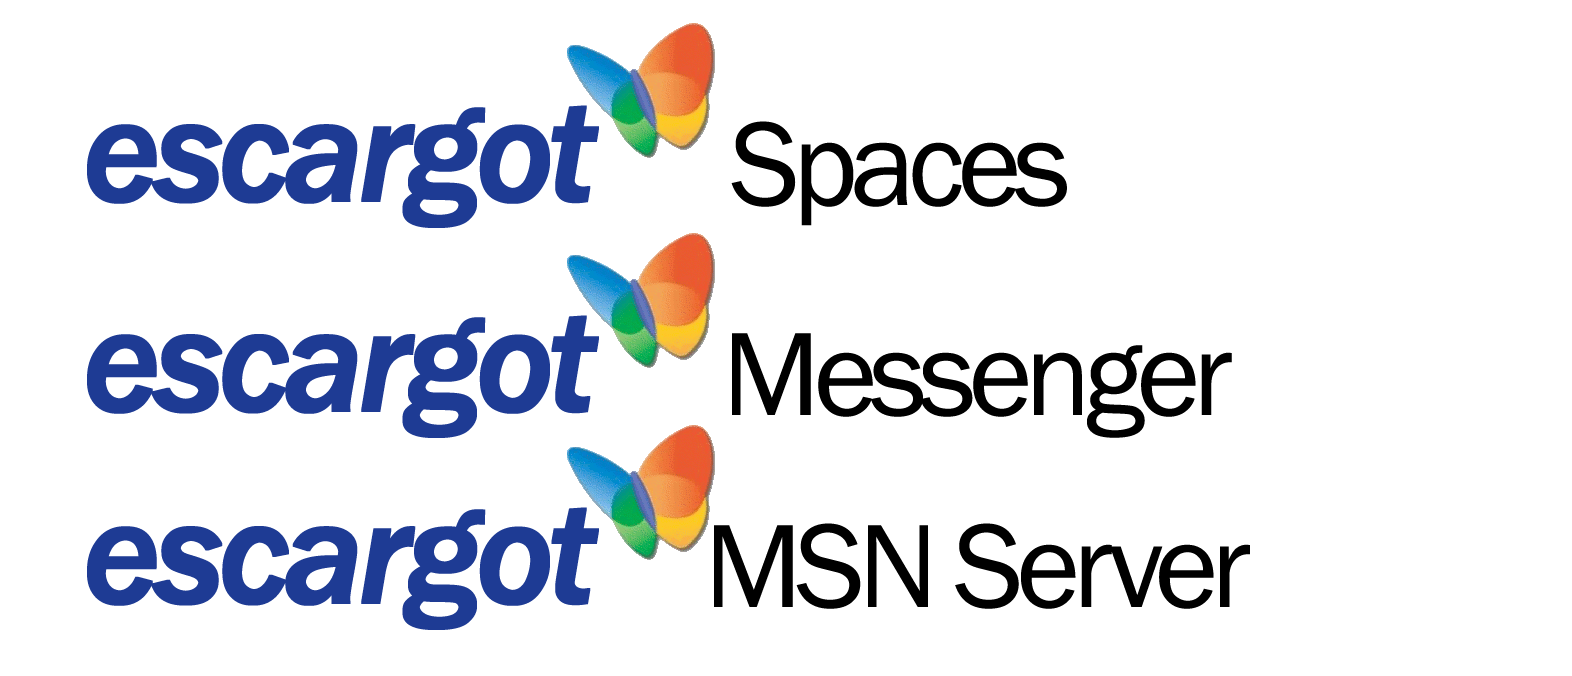 MSN Butterfly Logo - If anyone needs this Escargot logo - Escargot MSN Server - MessengerGeek